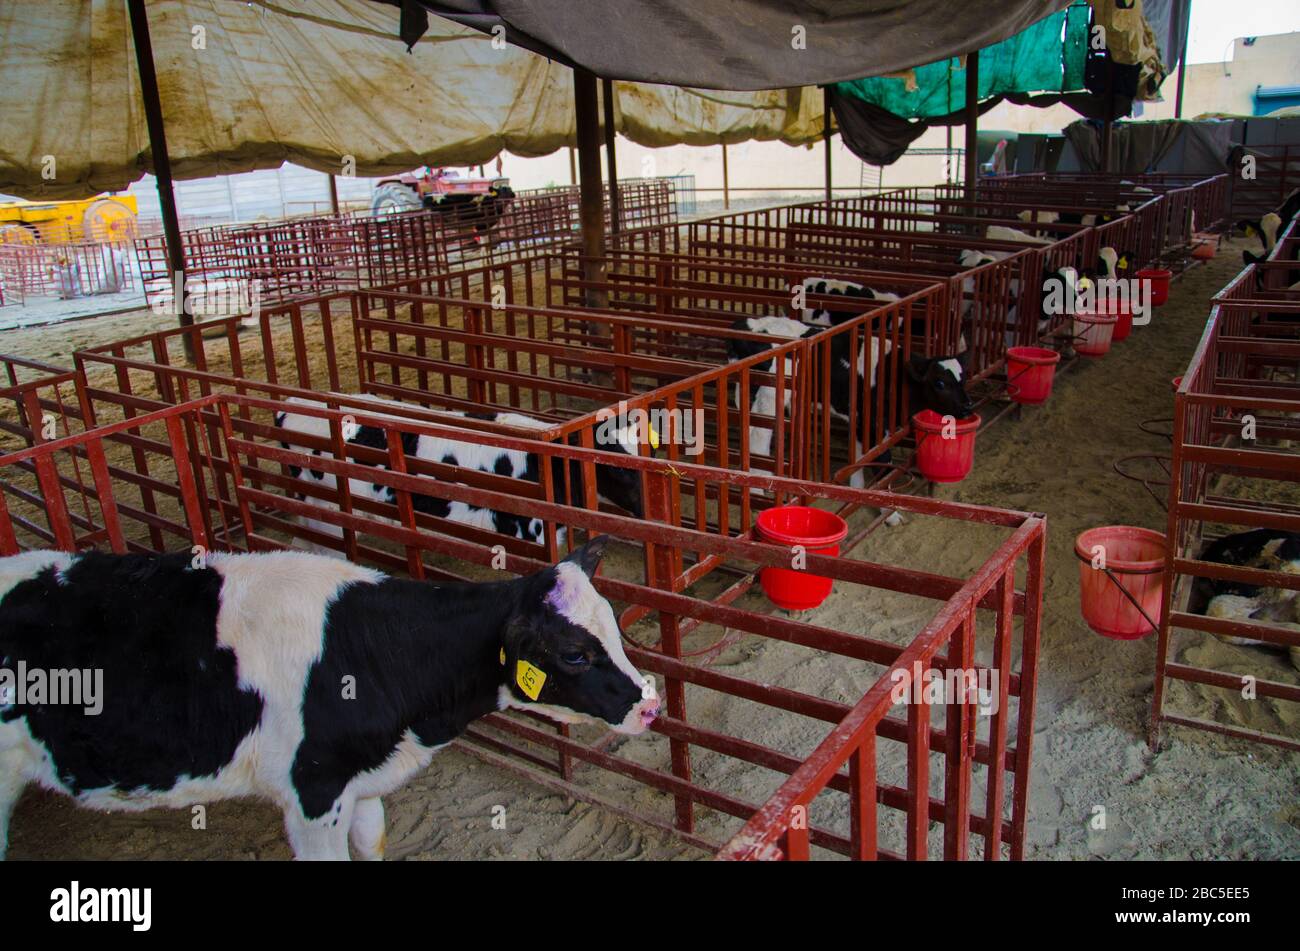 Una granja lechera en Nowshehra, provincia de KPK en Pakistán, que utiliza tecnología moderna, incluyendo energía solar, marcado de animales, sistemas de escape. Foto de stock